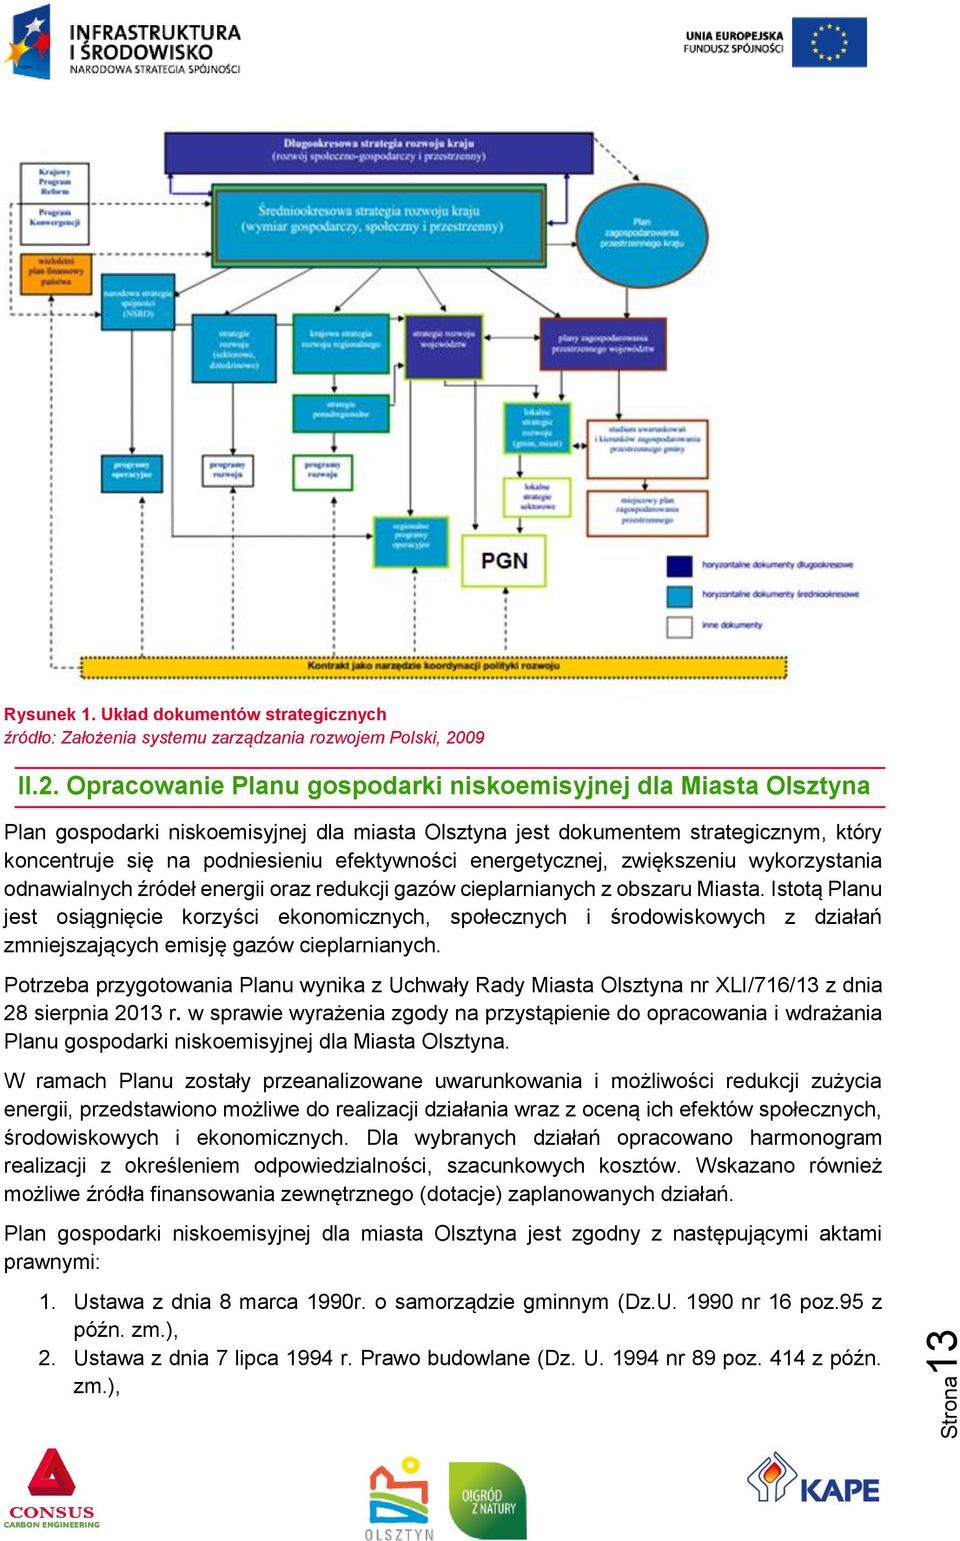 Opracowanie Planu gospodarki niskoemisyjnej dla Miasta Olsztyna Plan gospodarki niskoemisyjnej dla miasta Olsztyna jest dokumentem strategicznym, który koncentruje się na podniesieniu efektywności